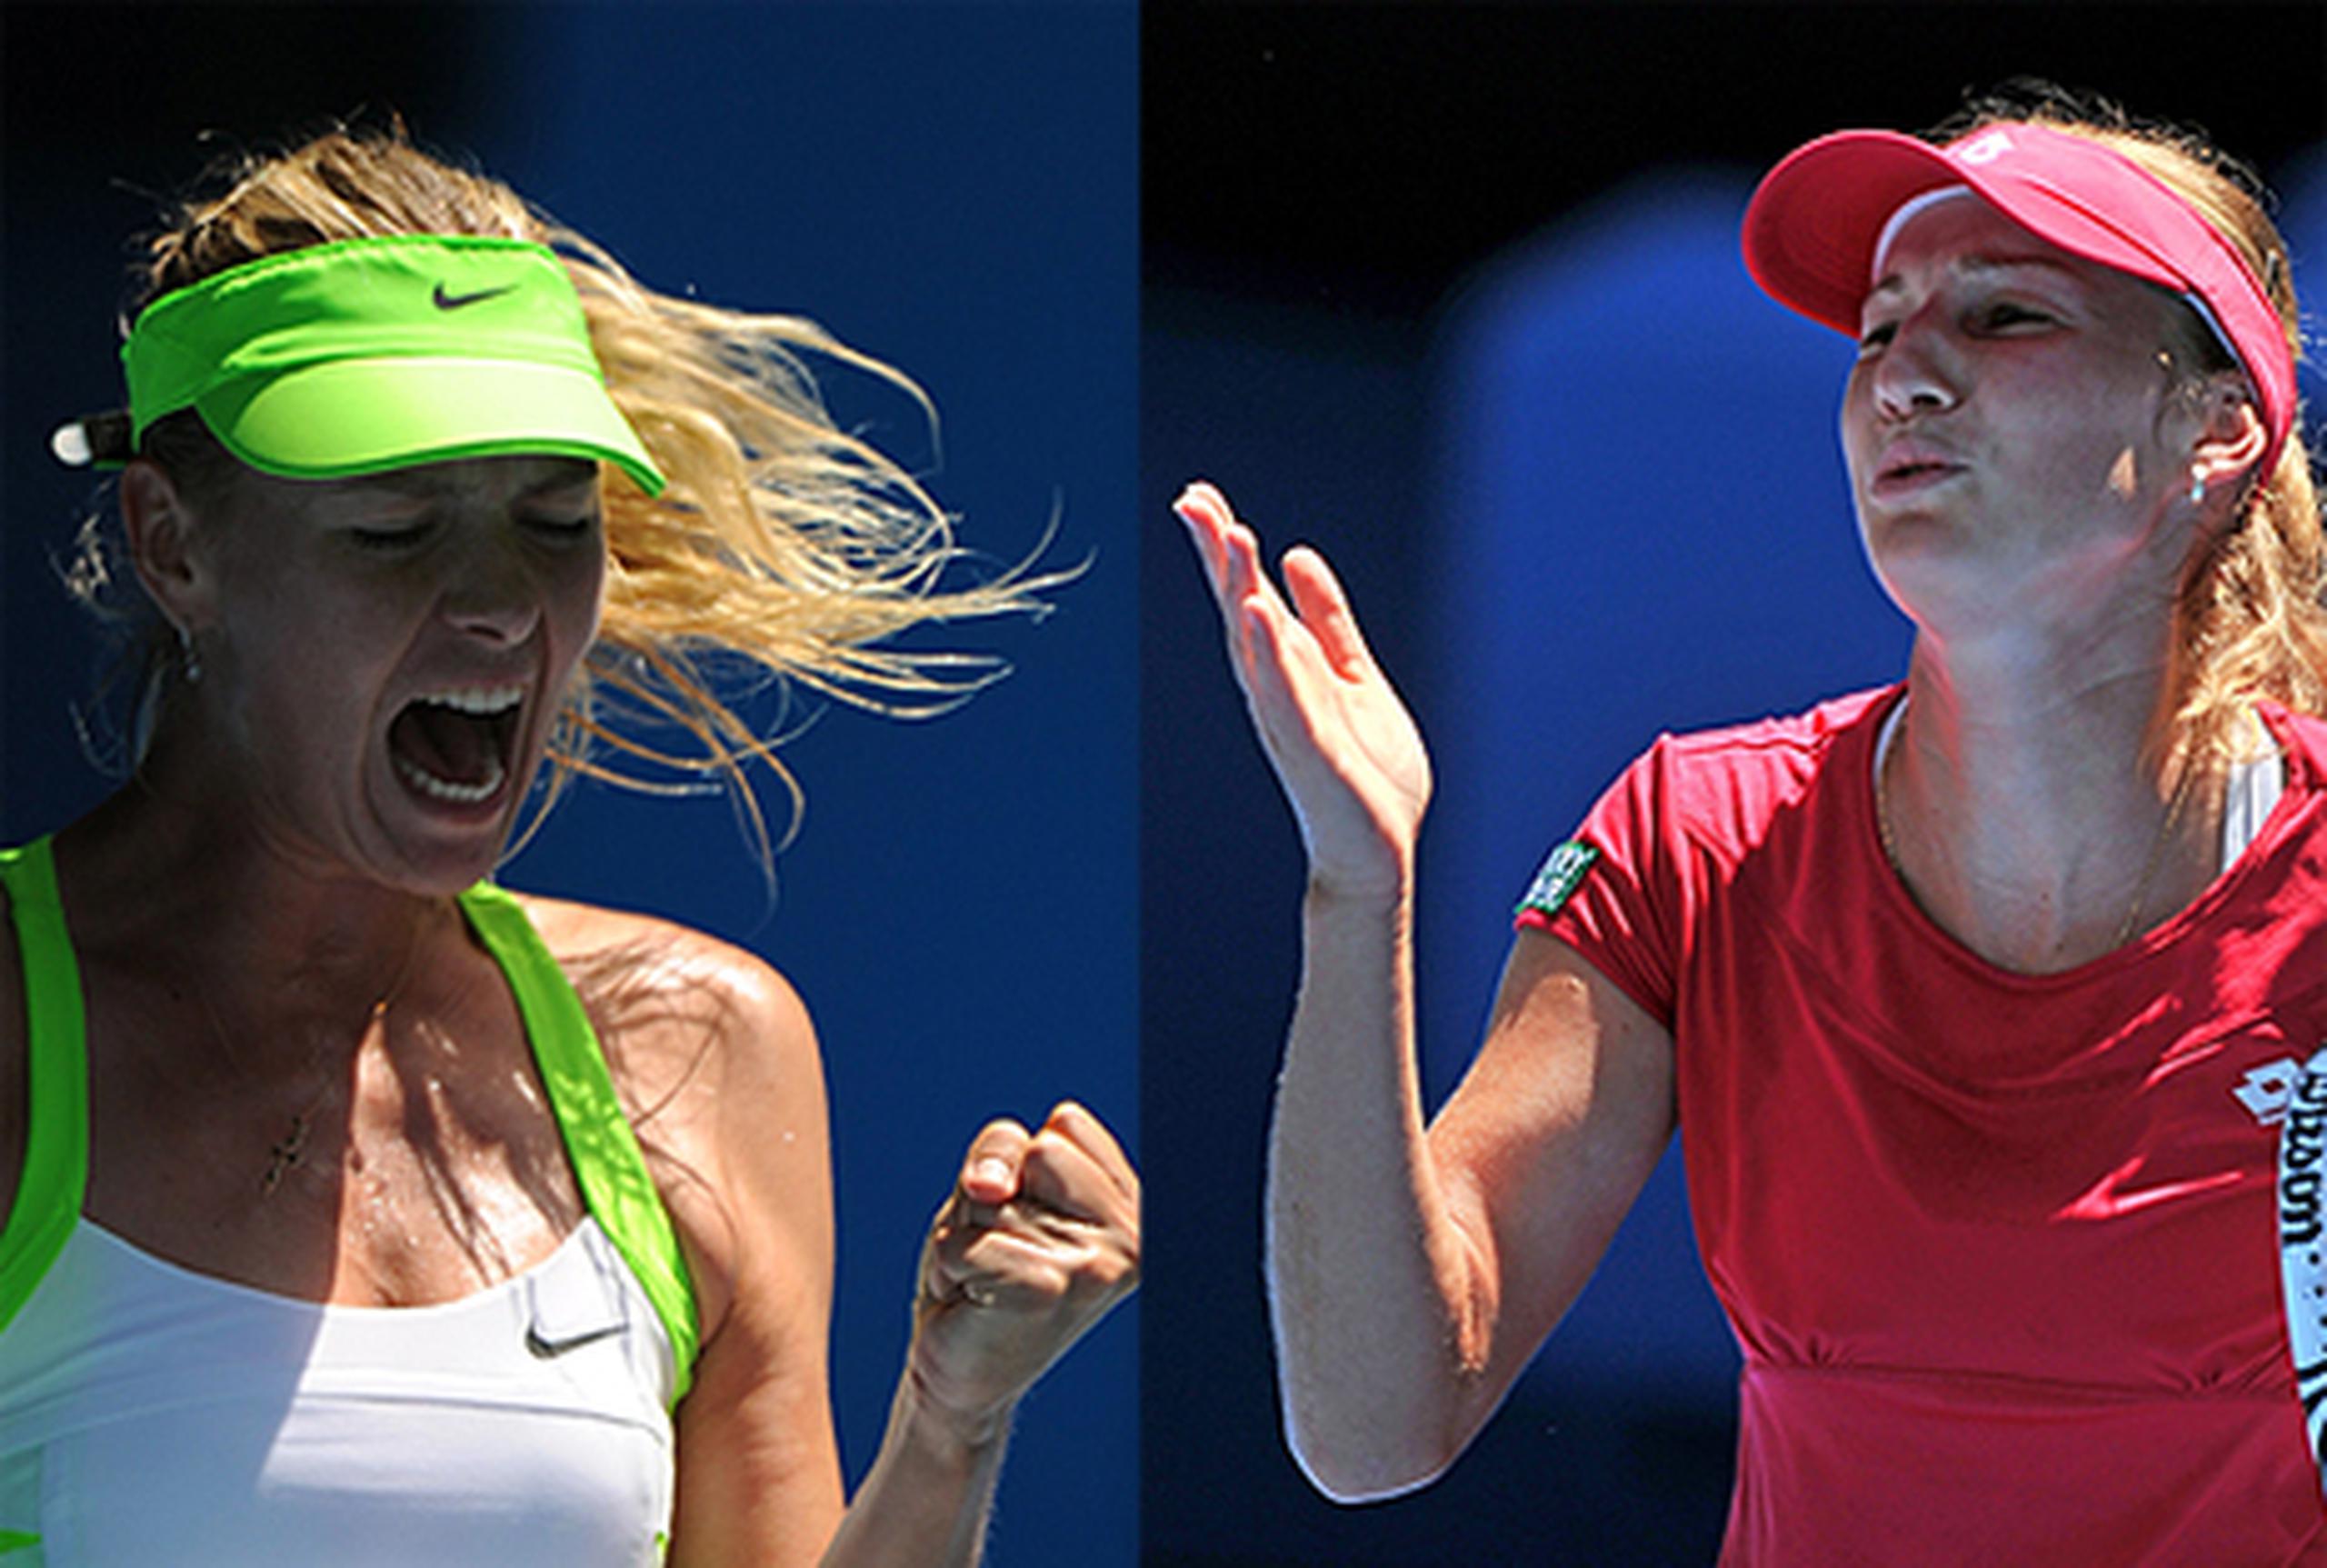 Radwanska, a la derecha, criticó los gritos de Sharapova, a la izquierda, durante sus partidos. (Archivo)